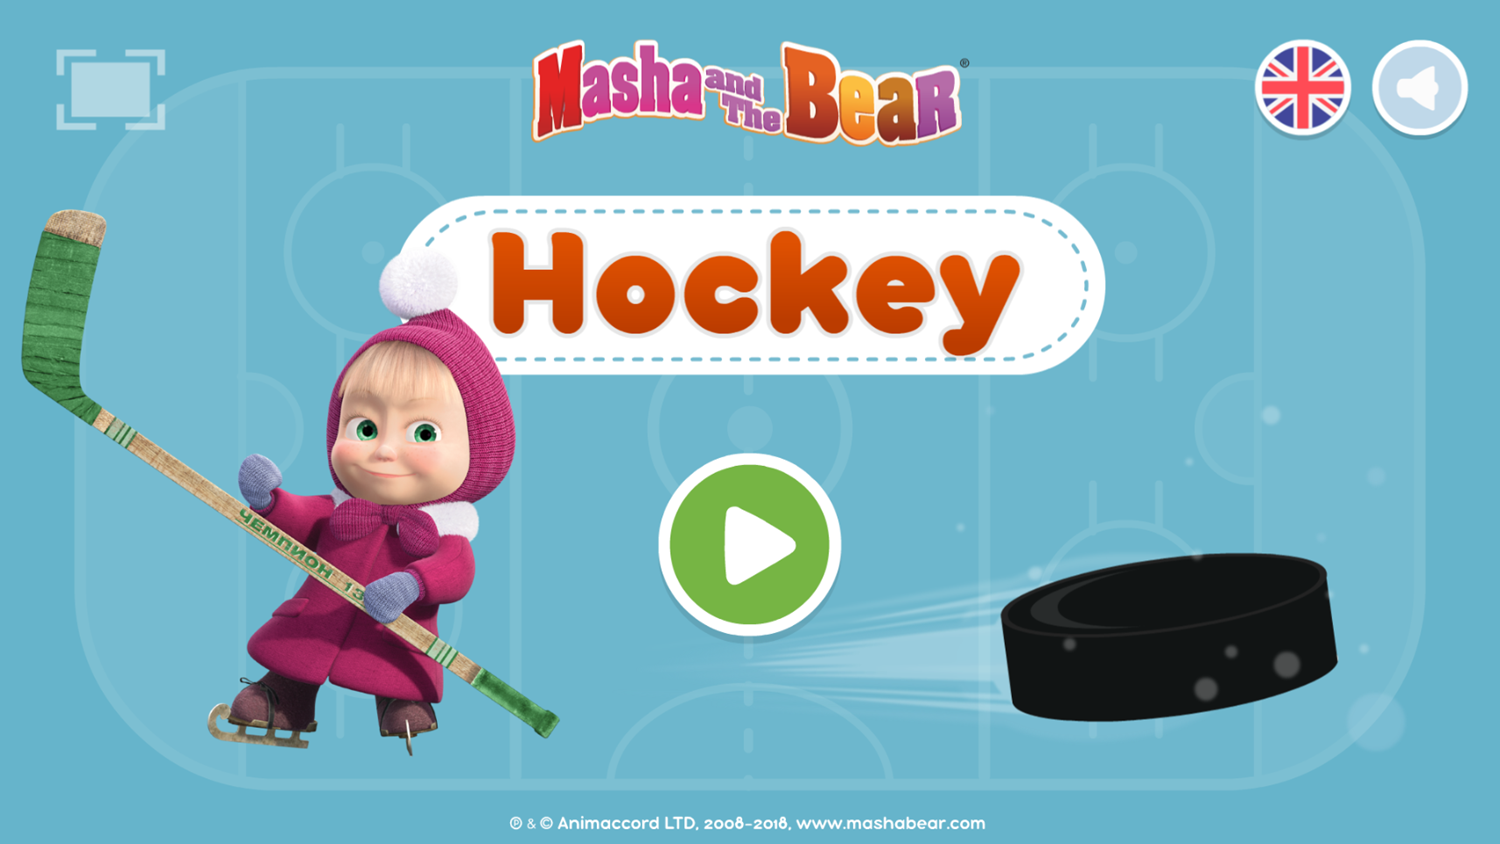 Masha and the Bear Hockey Game Welcome Screen Screenshot.